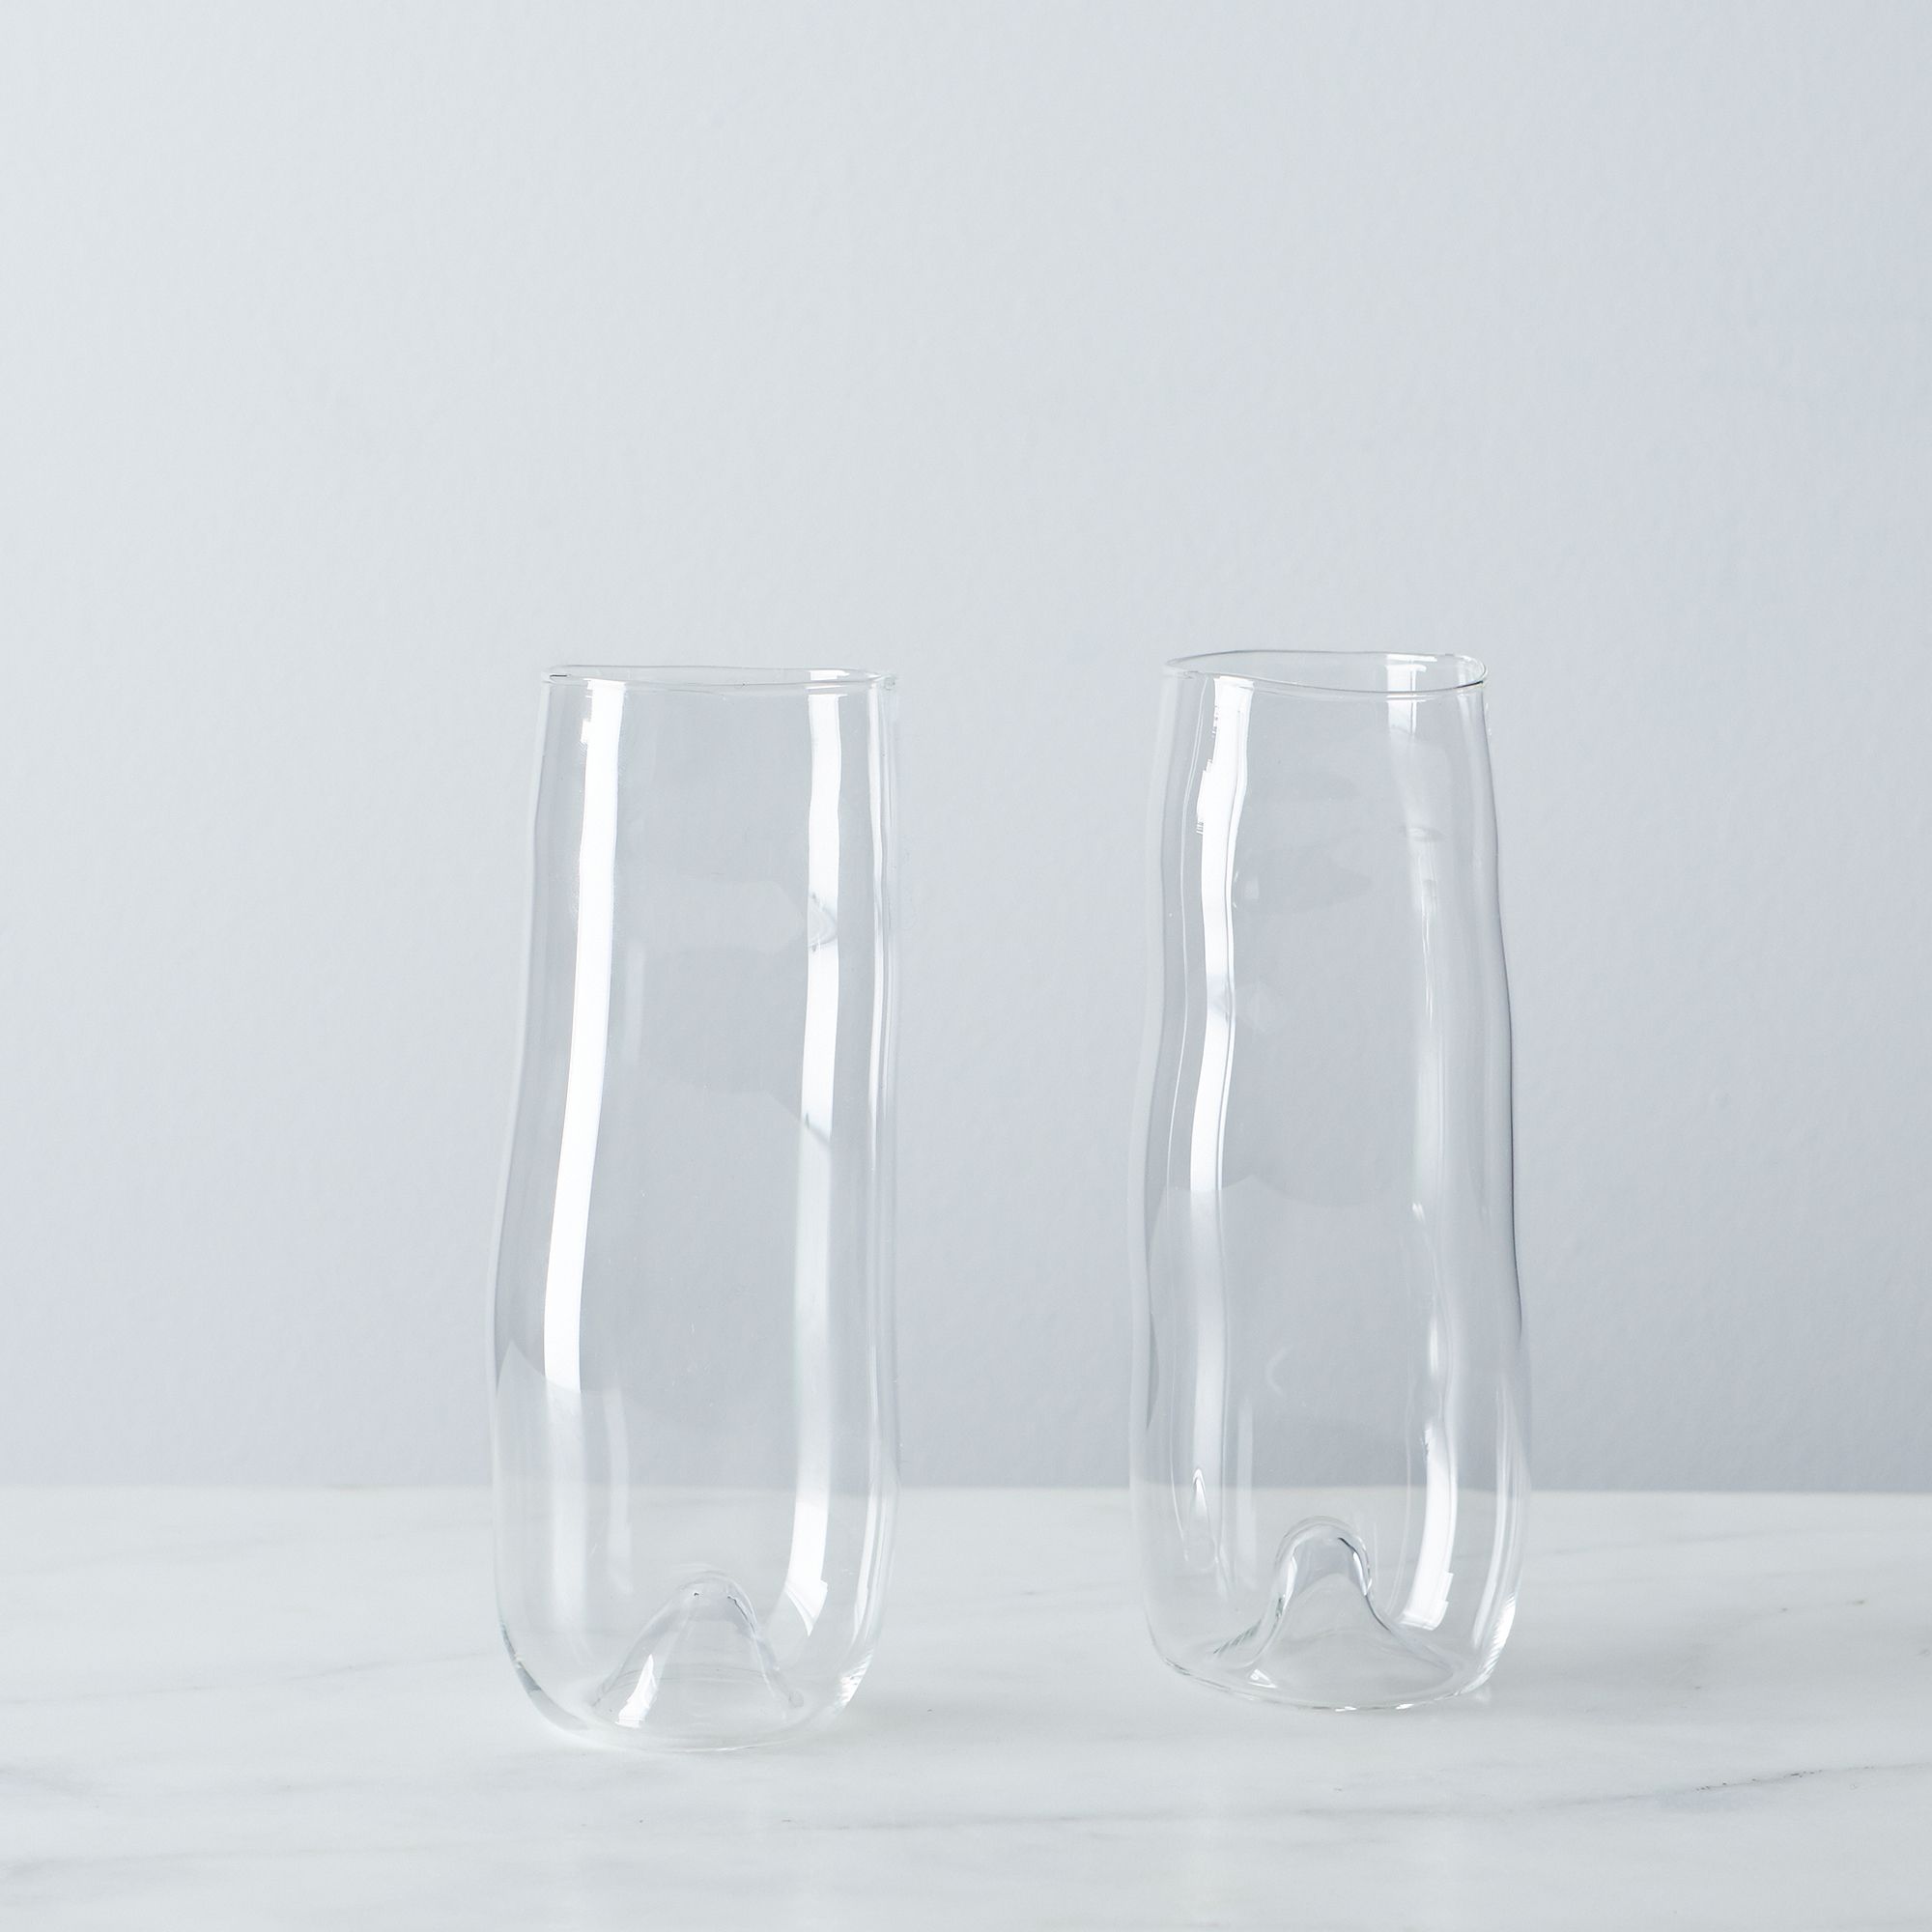 Unique glassware by Tiffany Joslin